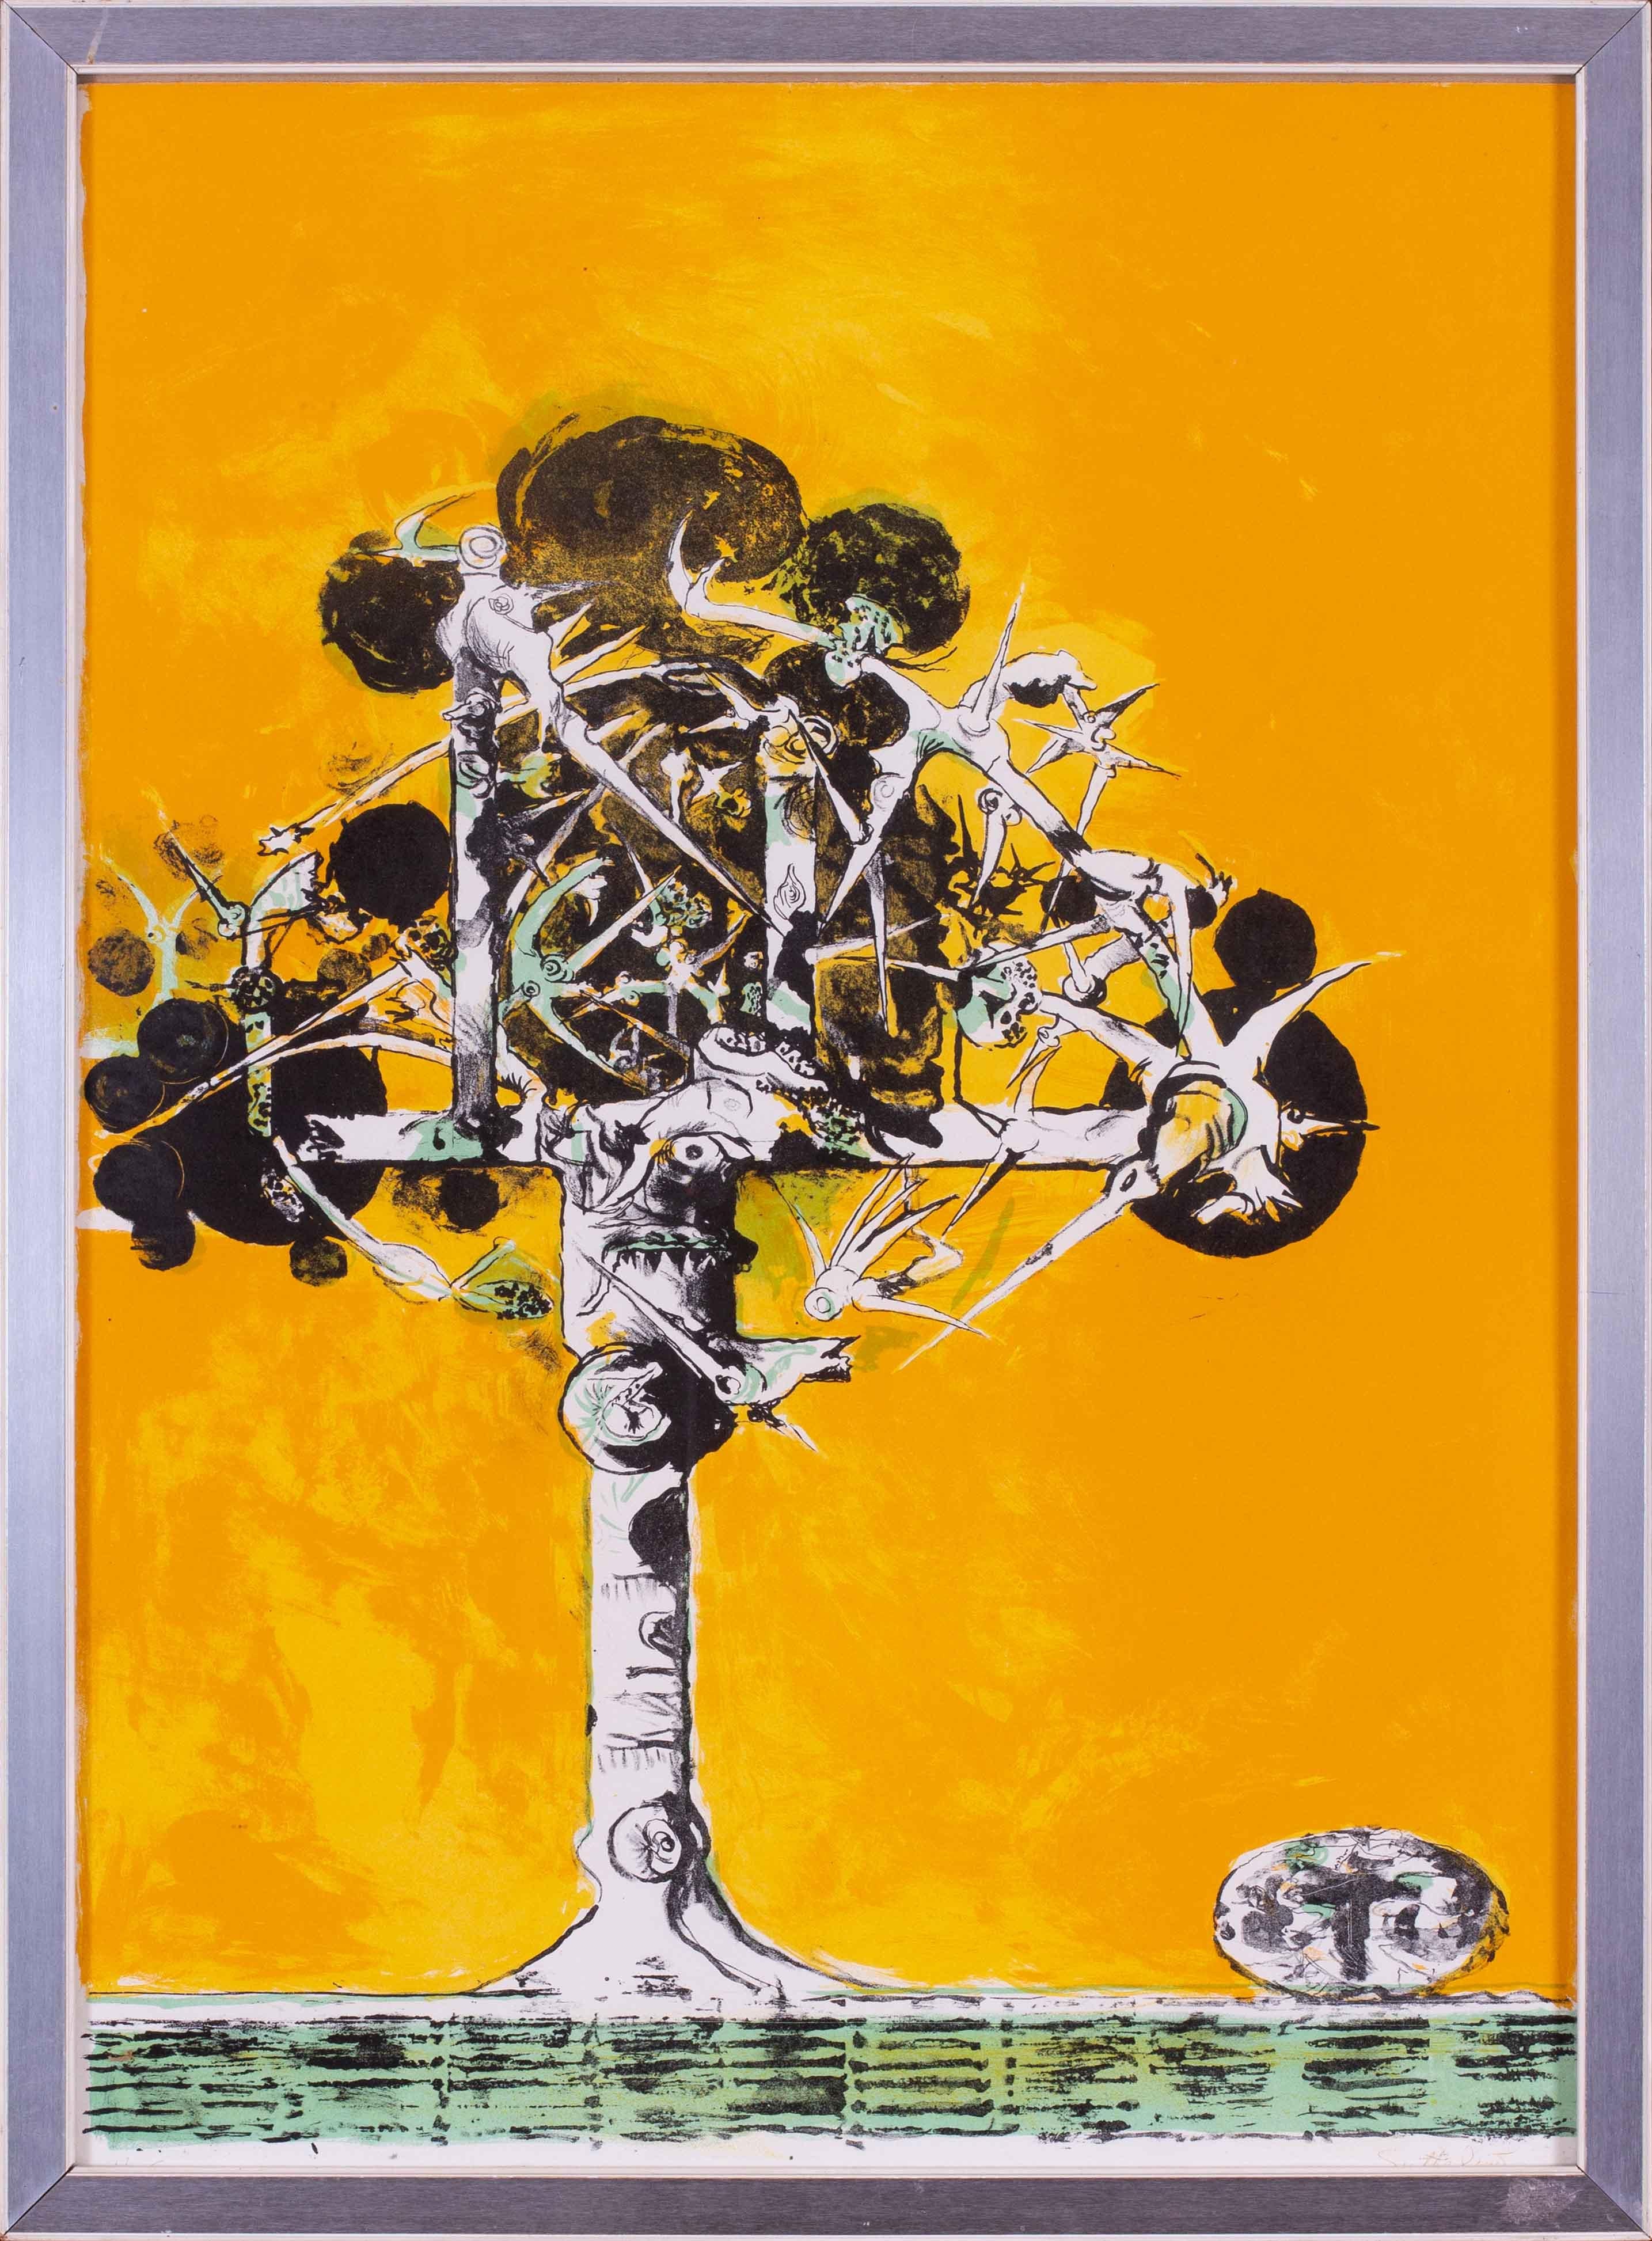 Lithographie originale signée de Graham Sutherland intitulée "Thorn Structure".  Une structure d'épines contorsionnée sur un fond jaune intense.

Graham Sutherland était un peintre de paysages imaginatifs, de natures mortes, de figures et de